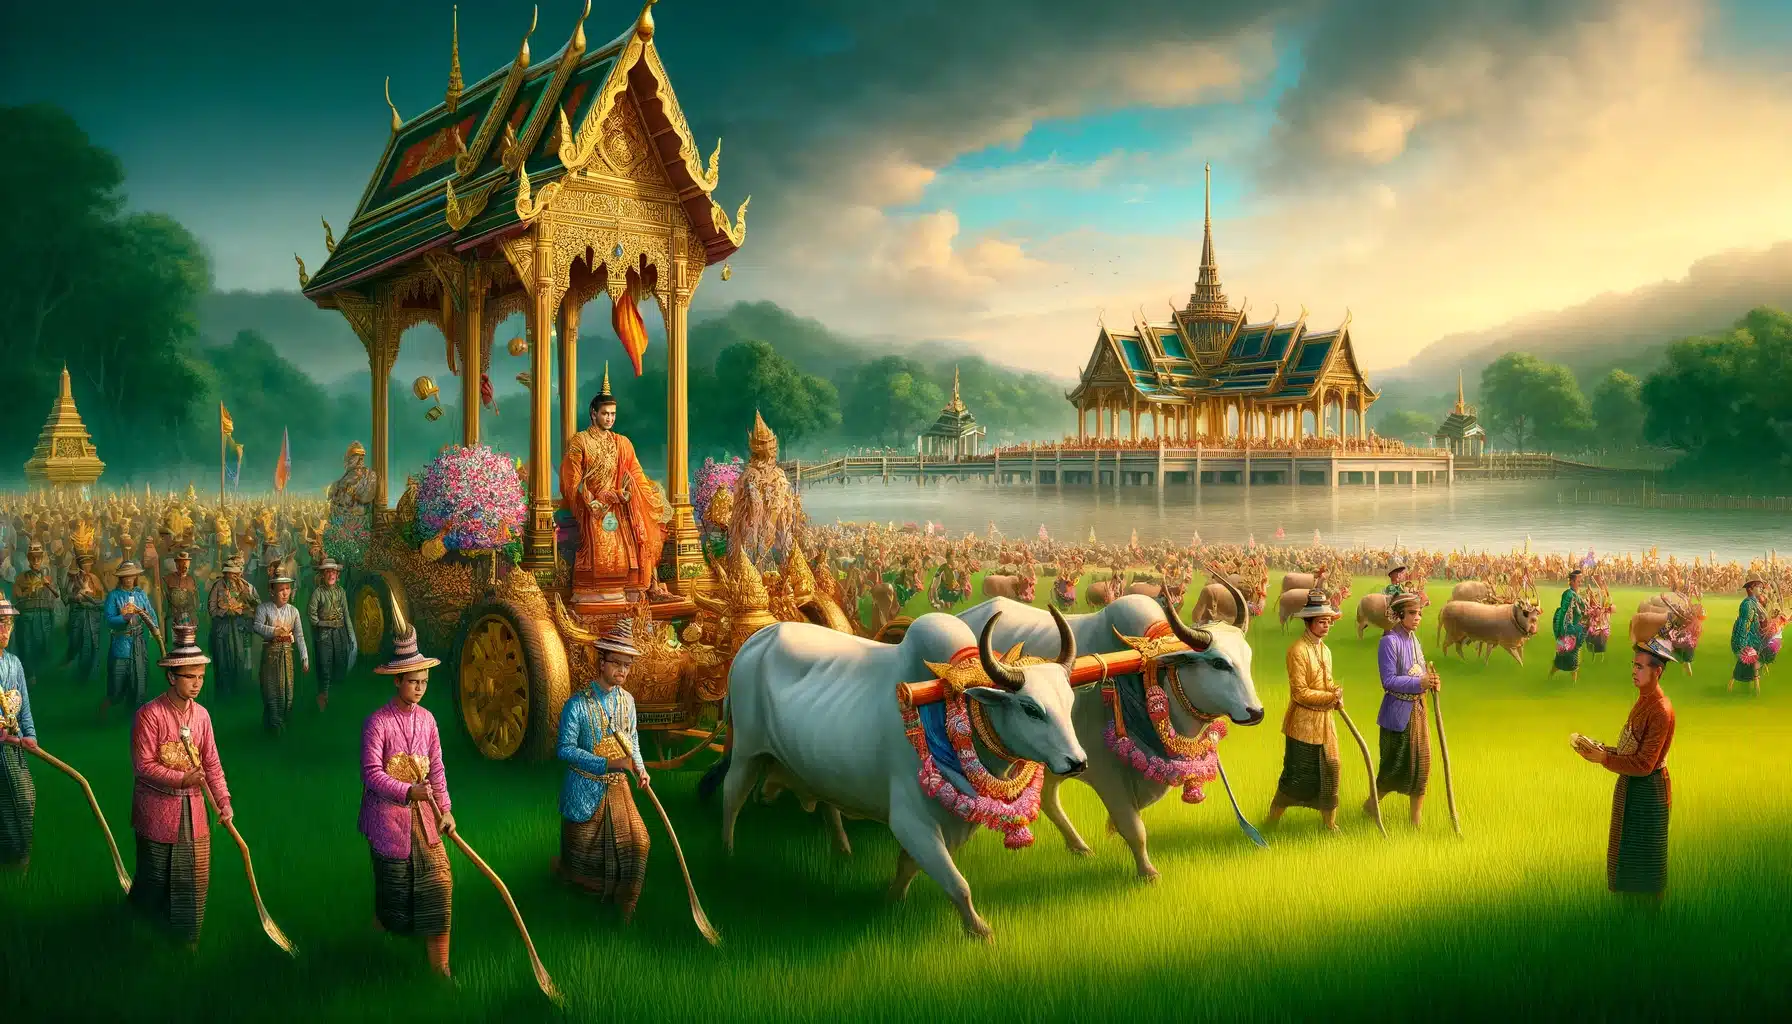 พระราชพิธีจรดพระนังคัลแรกนาขวัญในประเทศไทย เกษตรกรไทยสวมชุดไทยโบราณ โคตกแต่งด้วยผ้าสีสันสดใส และพระมหากษัตริย์ทรงประกอบพิธีไถนา พื้นหลังเป็นทุ่งนาเขียวขจีใต้ท้องฟ้าสีครามสดใส มีศาลาราชวังอยู่ไกลๆ บรรยากาศสดใสและเต็มไปด้วยวัฒนธรรมไทยที่เข้มข้น แสดงให้เห็นถึงความสำคัญของเกษตรกรรมในวัฒนธรรมไทย
